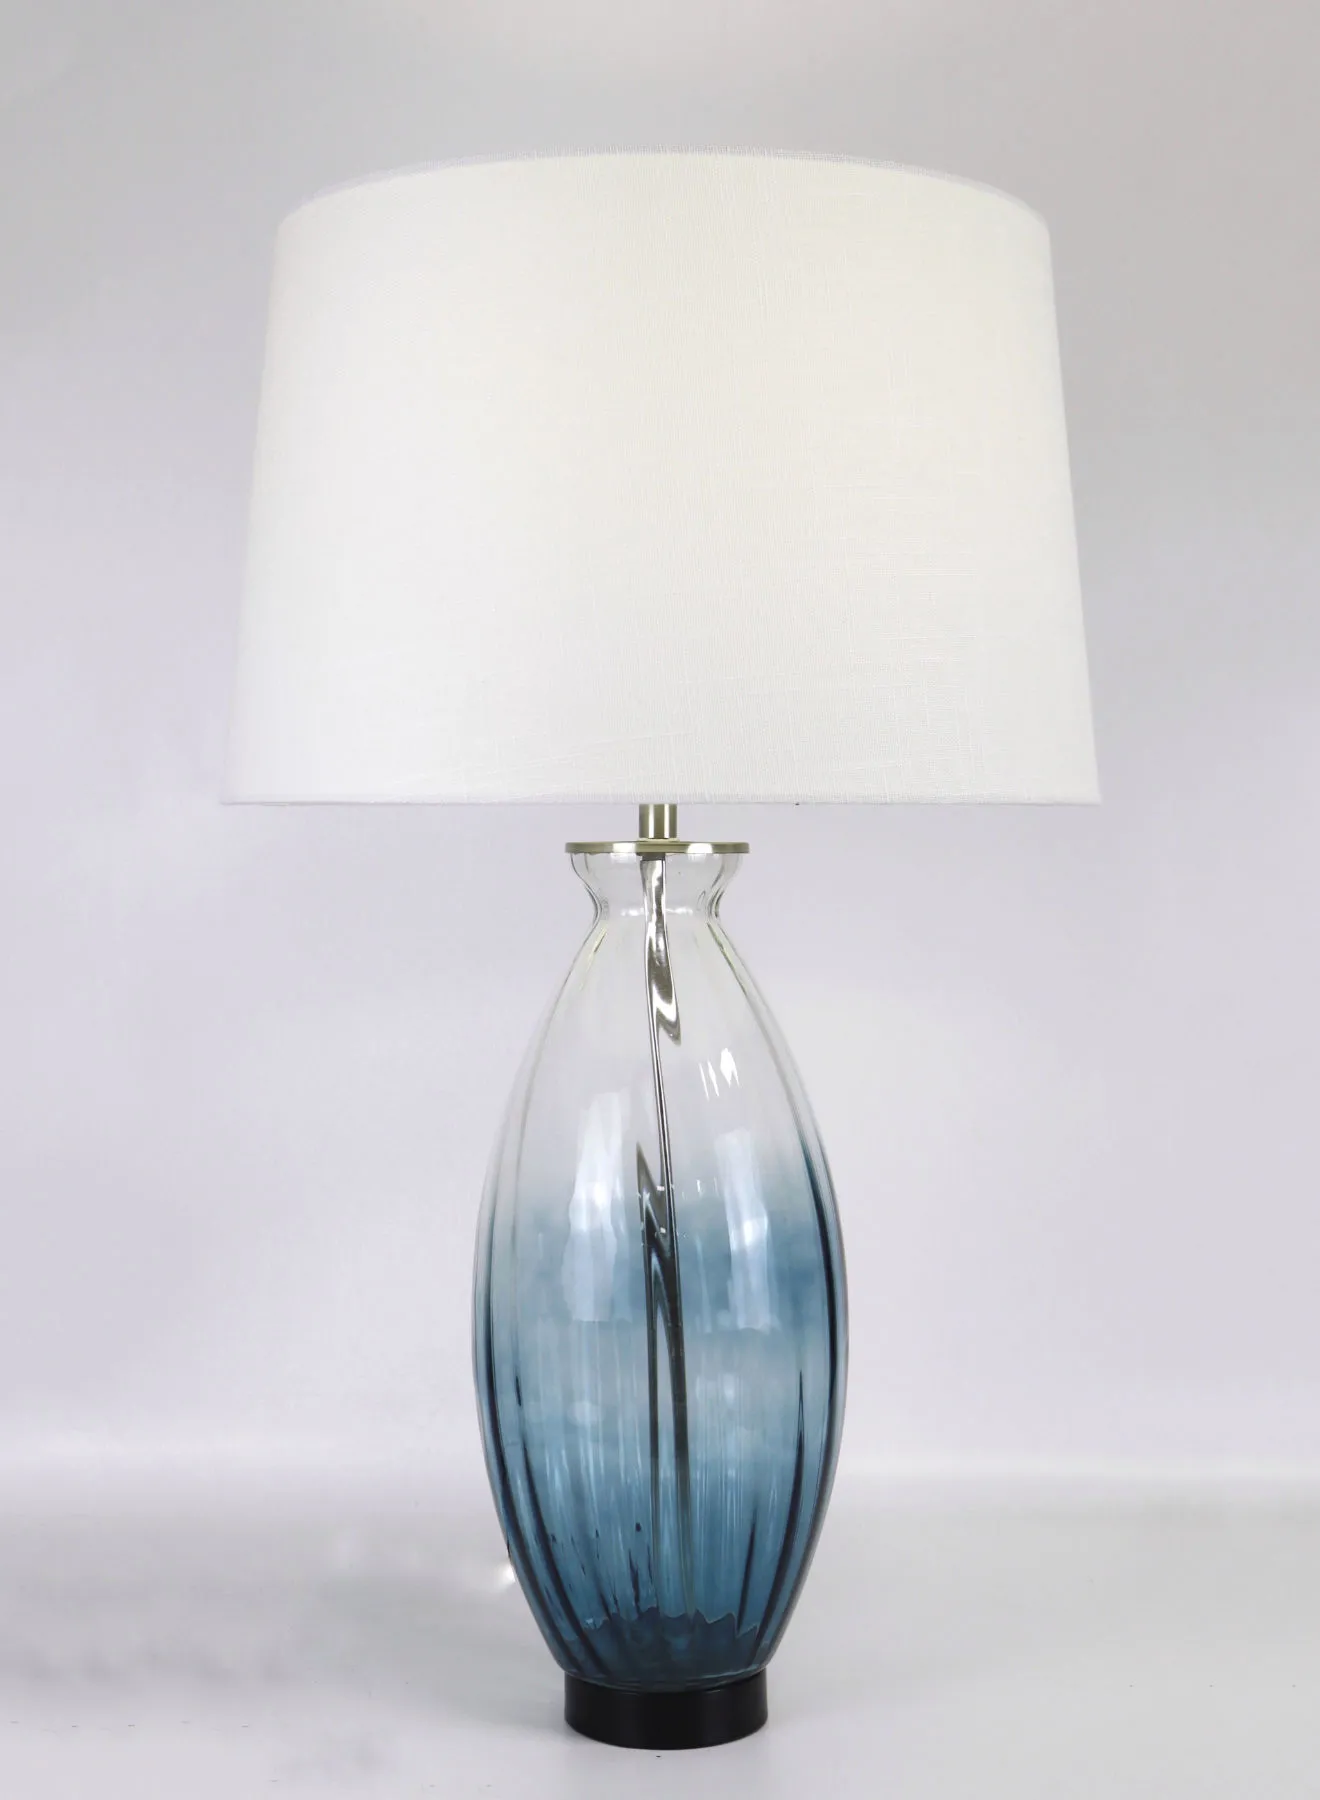 مصباح طاولة زجاجي بتصميم عصري من التبديل مادة فاخرة فريدة من نوعها لمنزل أنيق مثالي RSN71030 أزرق 17 × 29 أزرق 17 × 29 بوصة